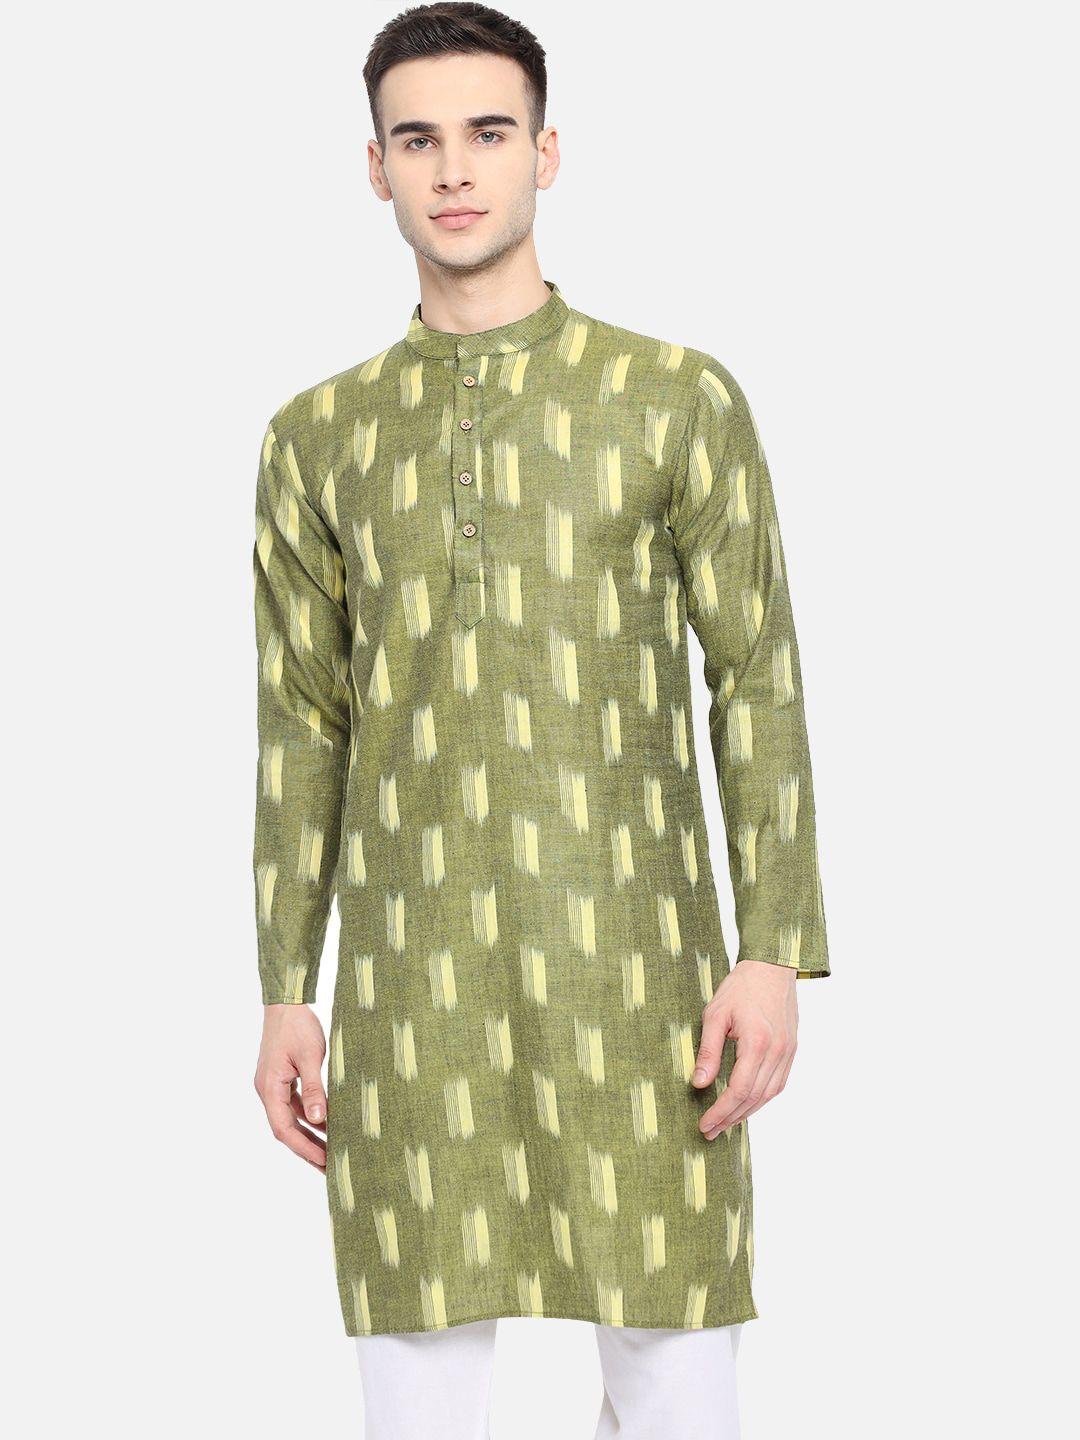 vastraa fusion men green & yellow ikkat printed cotton a-line kurta